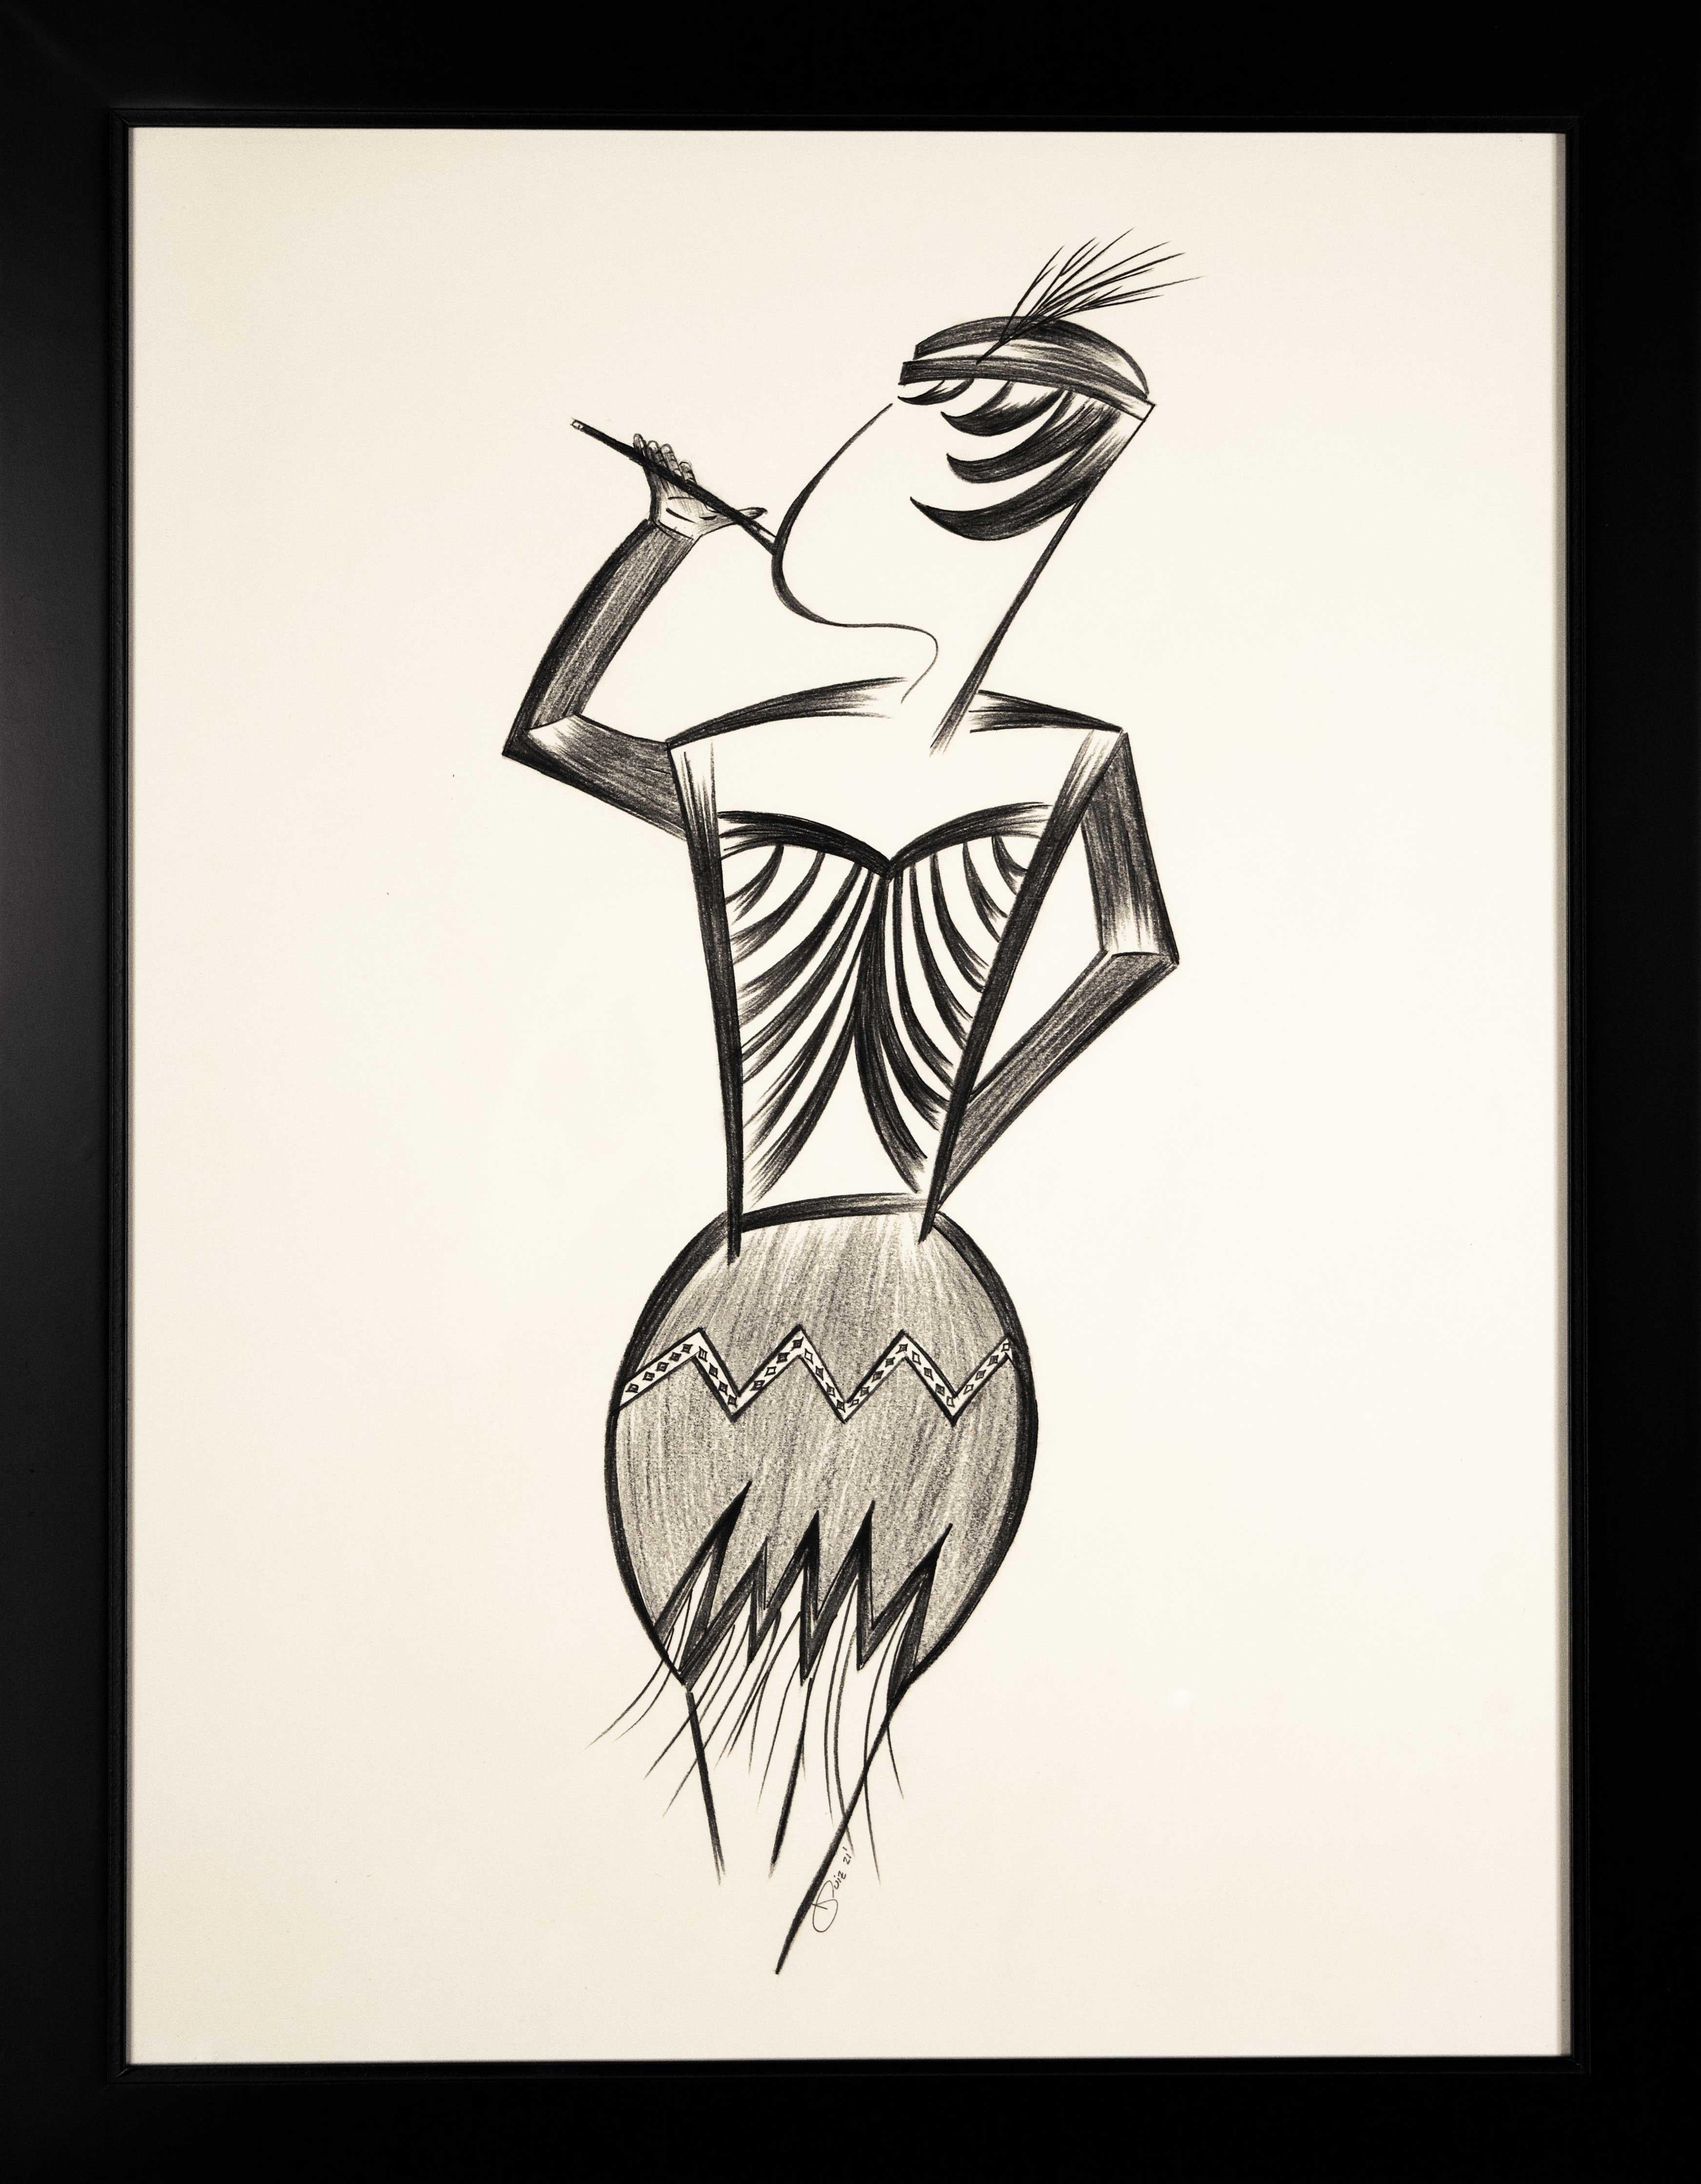 Jorge Ruiz-Martinez Figurative Art – Mid-Century Art Deco Minimalismus Schwarz-Weiß- weibliche Figur, lateinamerikanische Künstlerin, signiert